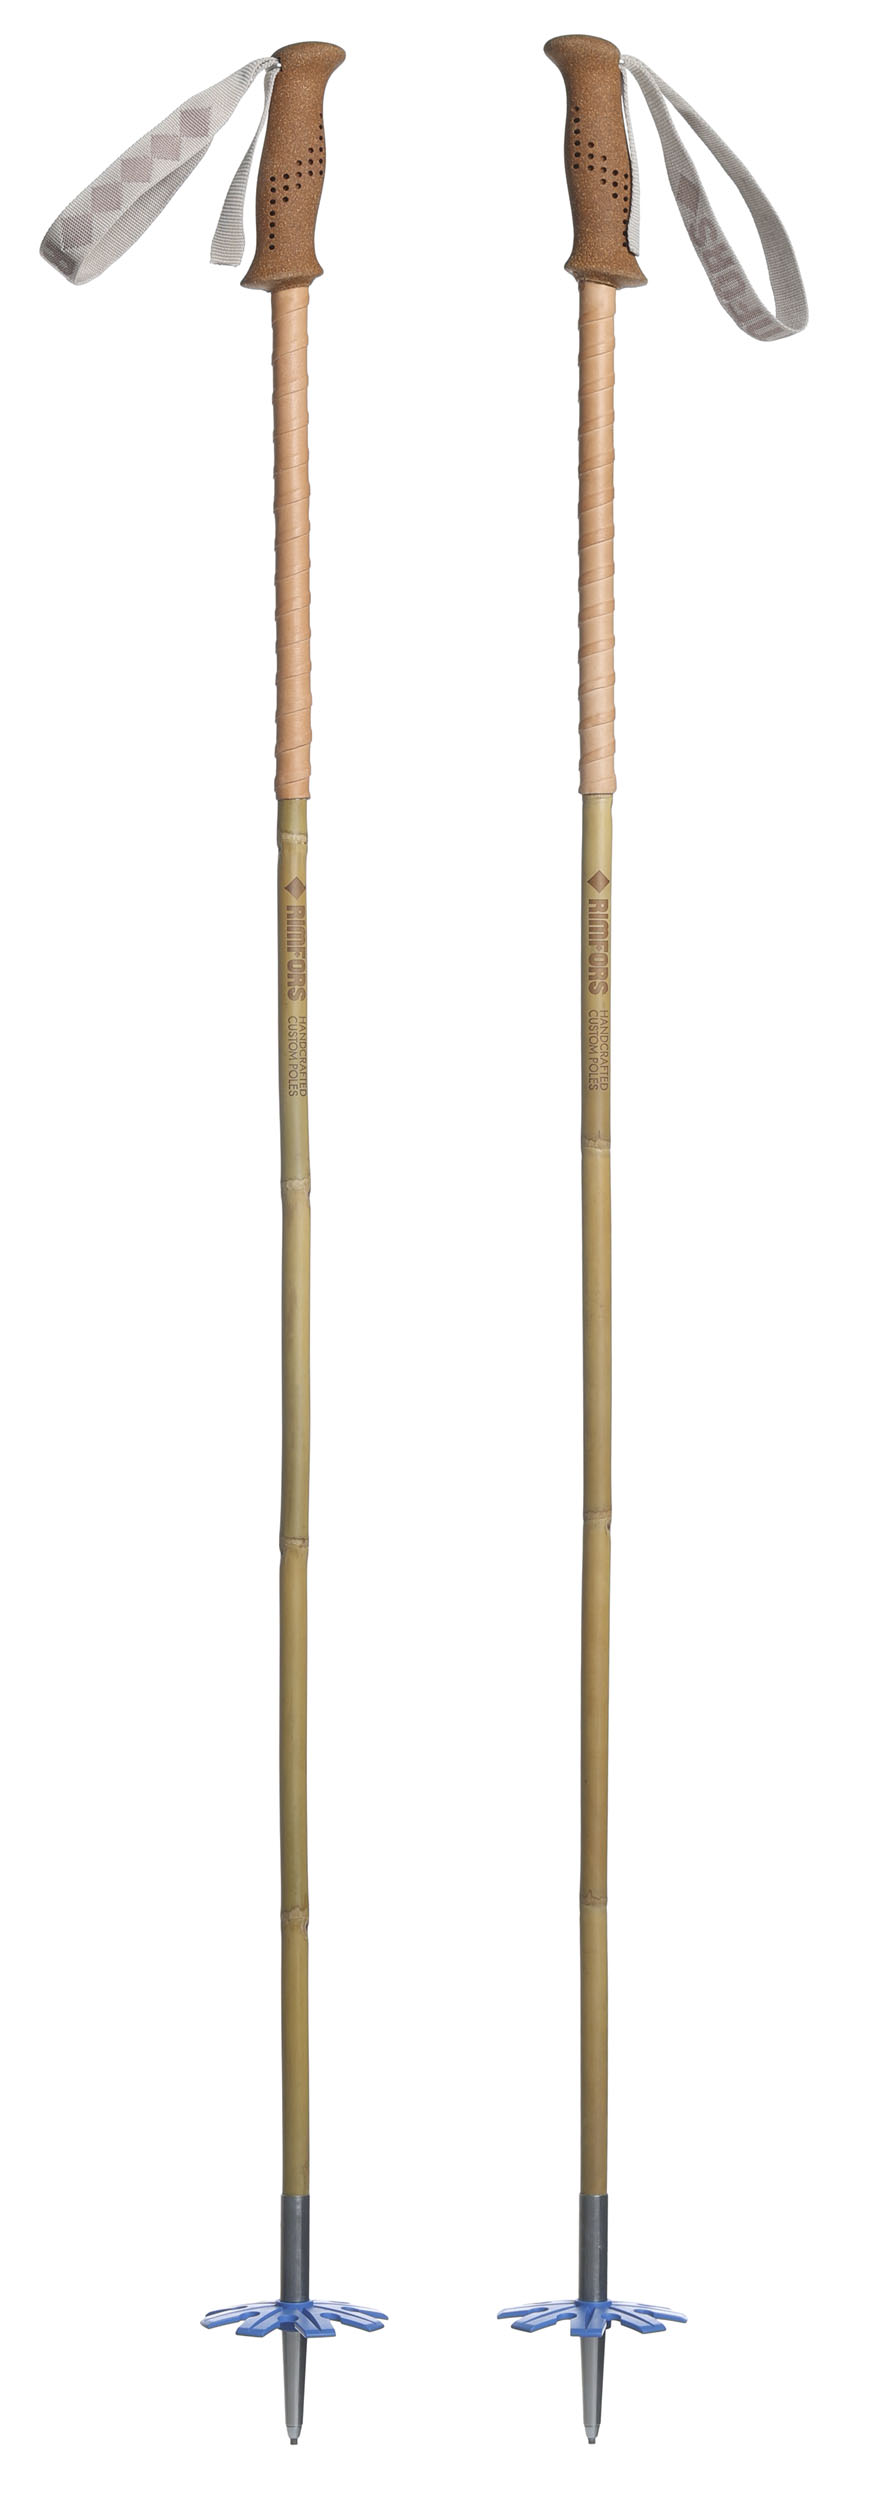 Bambustavar med handtag av kork och blå trugor (100 mm) + förlängt grepp av renskinn.